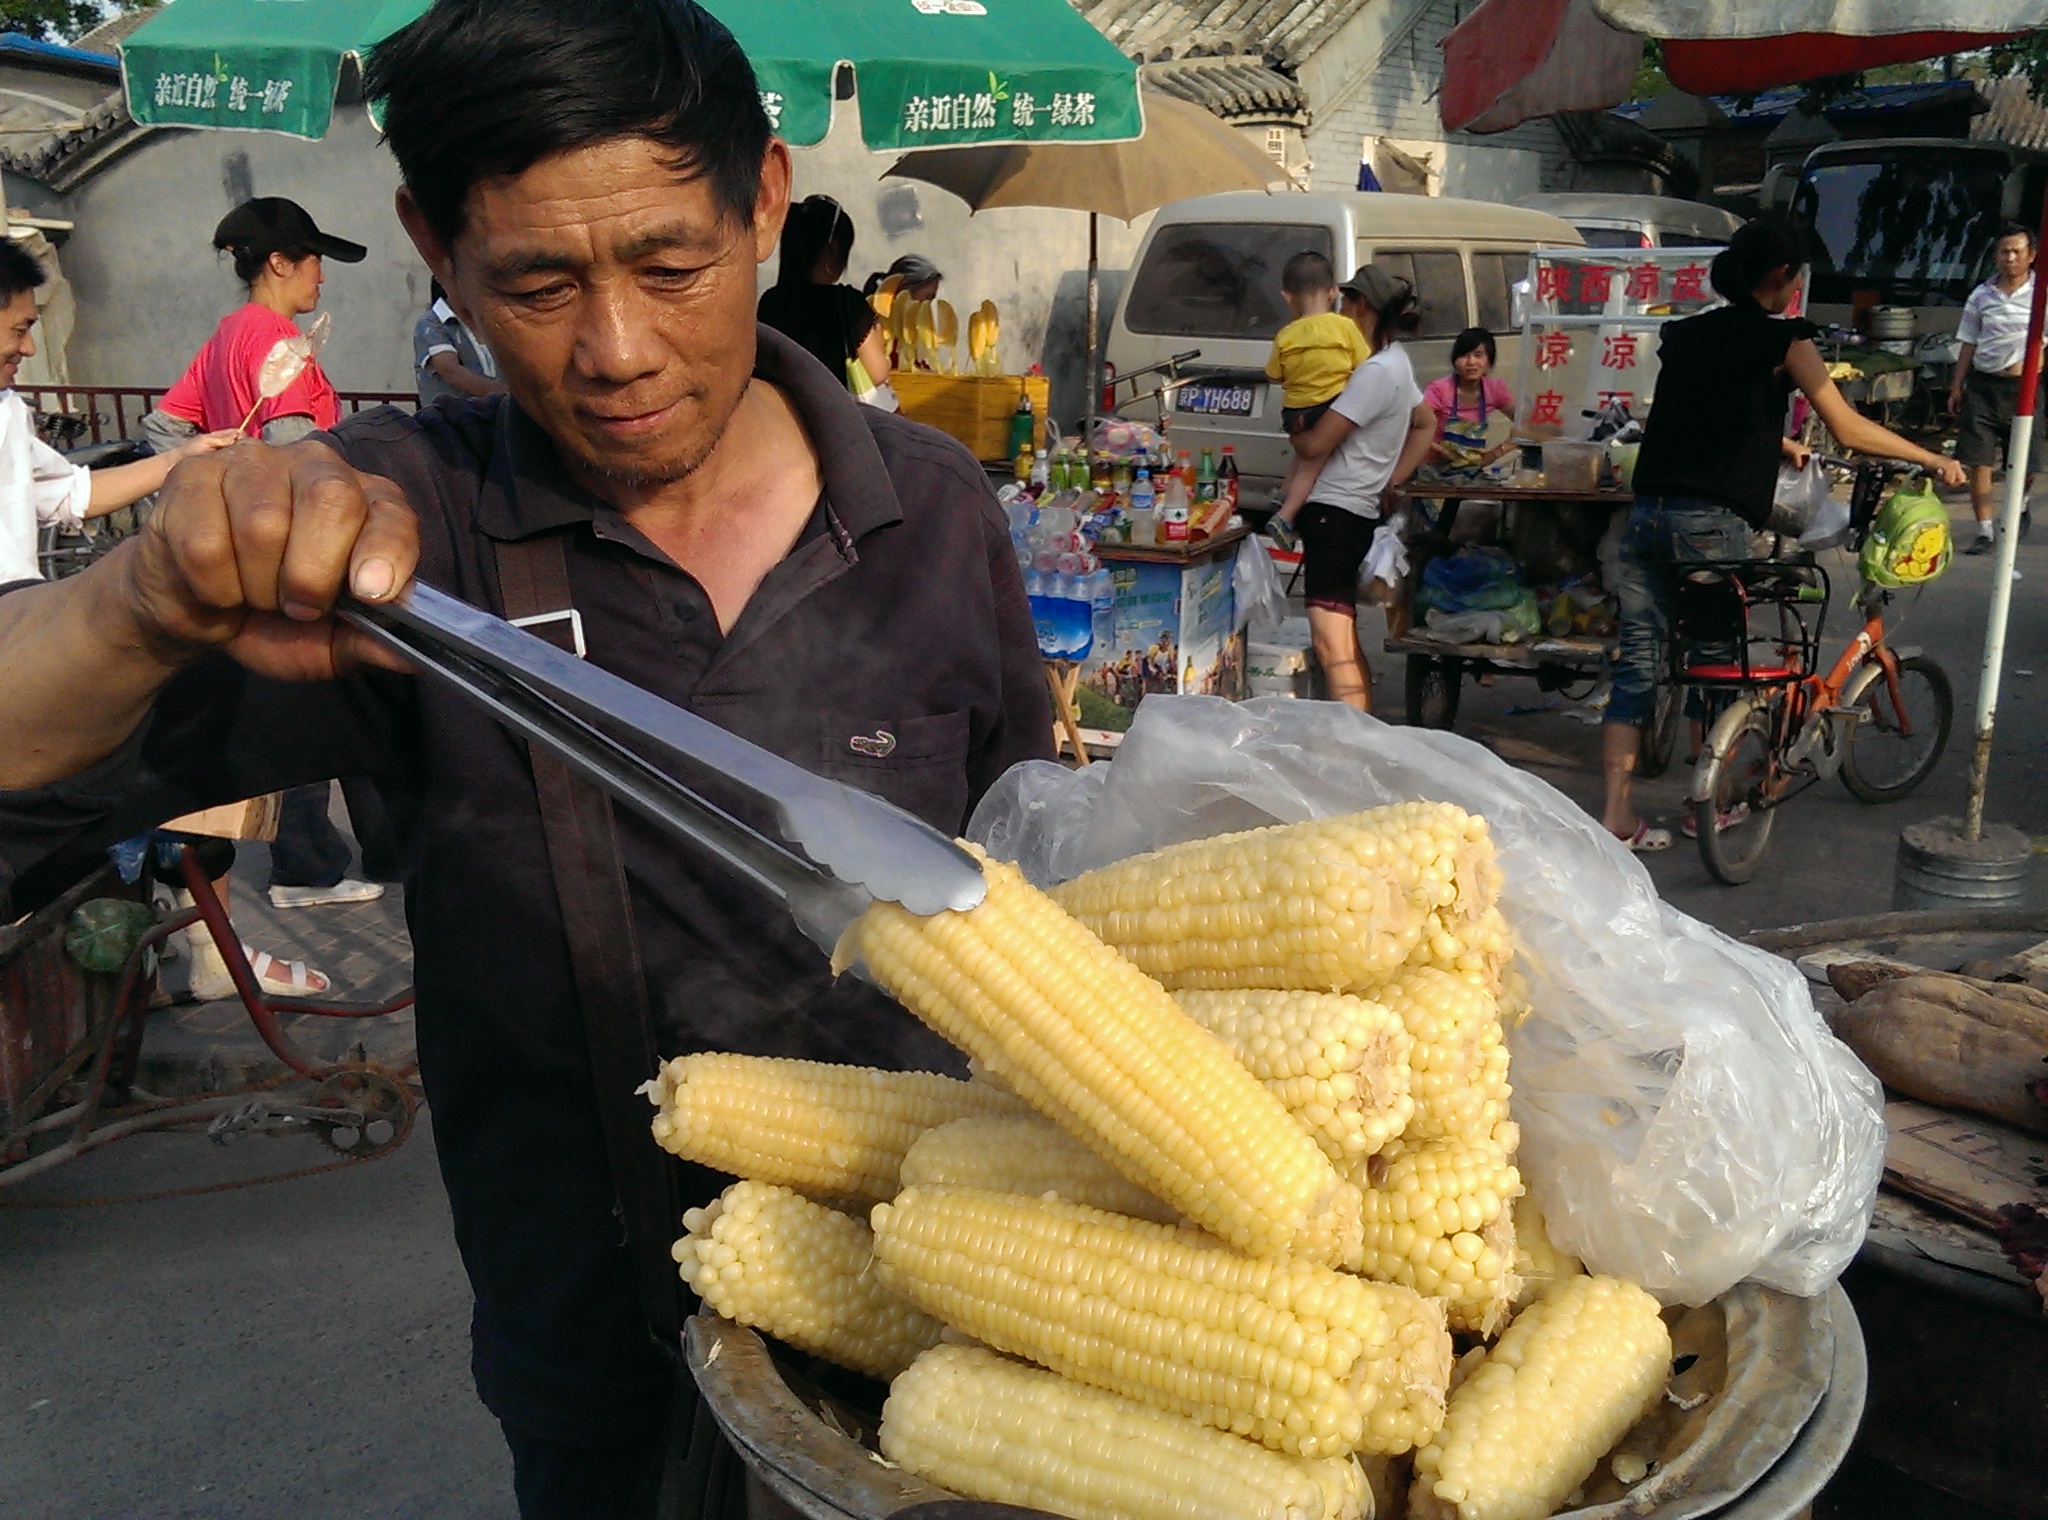 htc one[m7/802t 智能手机 实拍 卖玉米的商贩